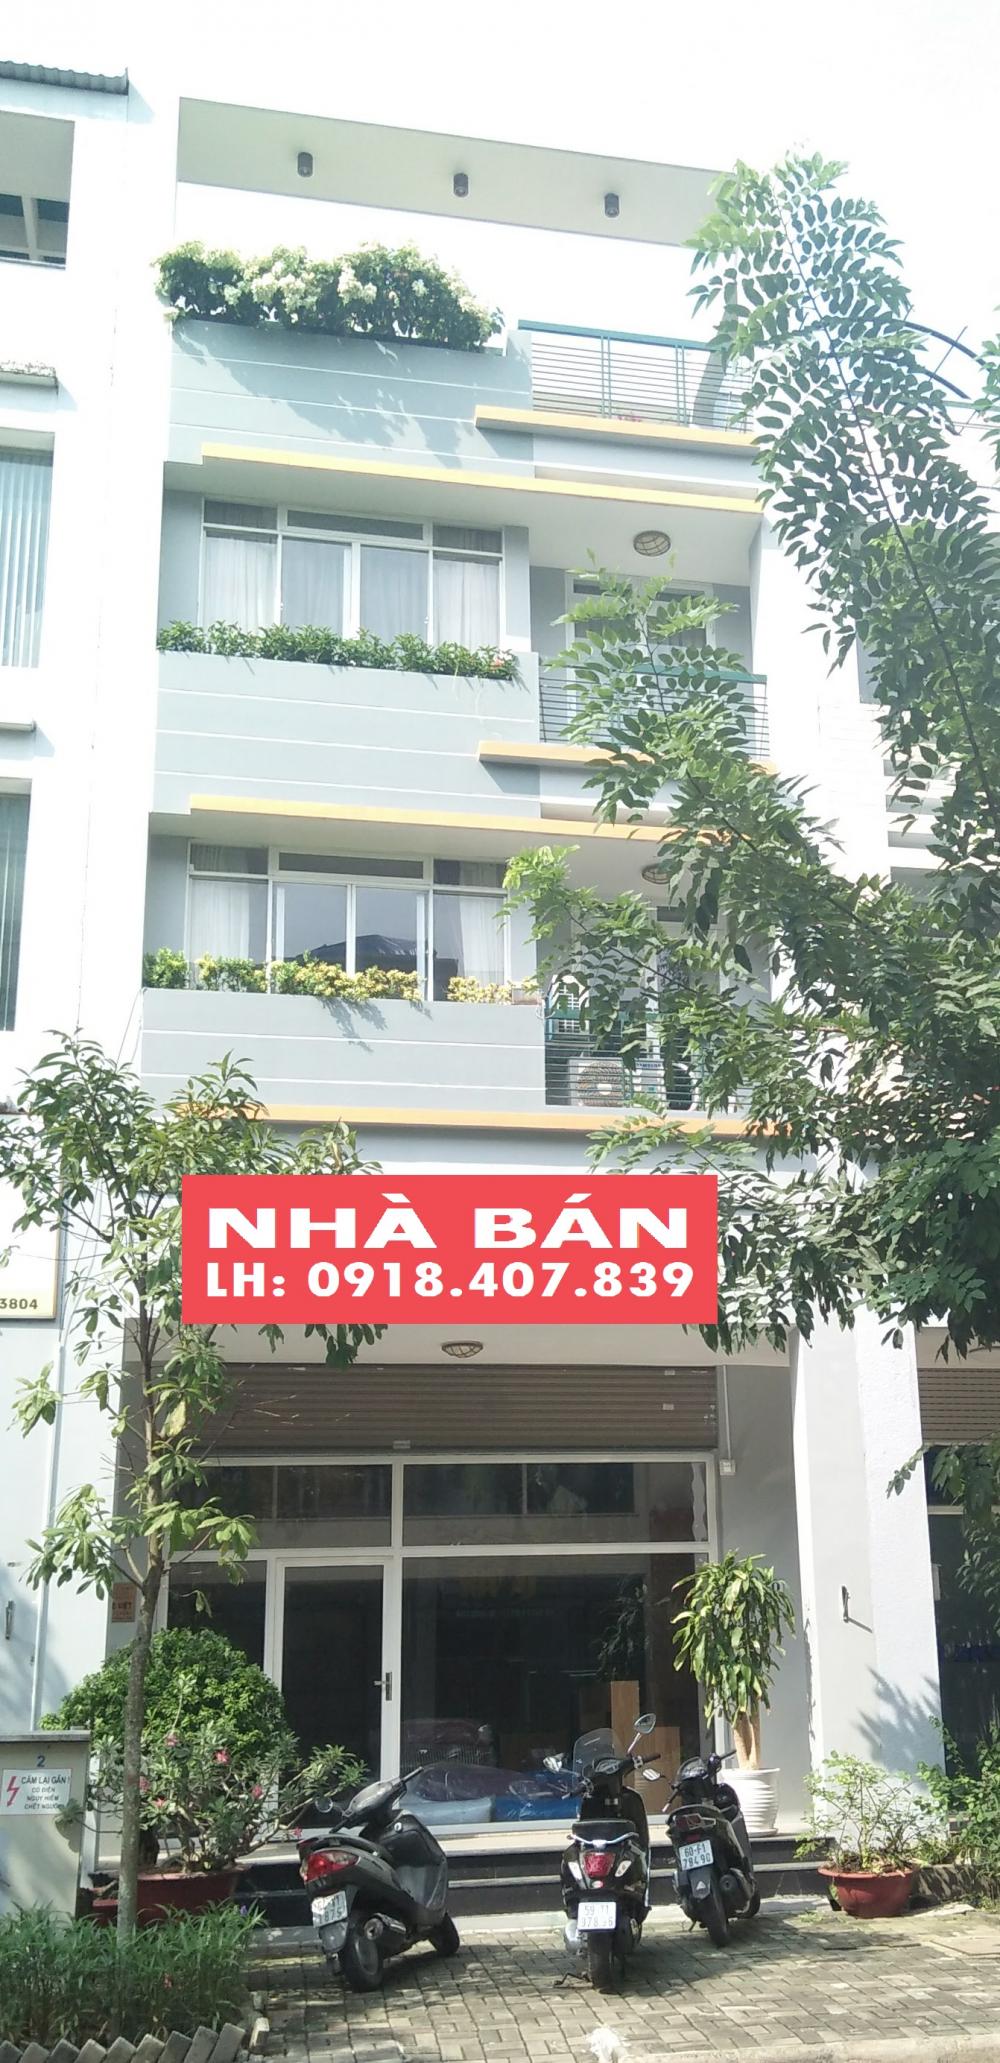 Cần bán nhanh căn nhà phố kinh doanh Hưng Gia Hung Phước 15 tỷ. Tel 0918407839 Hưng.